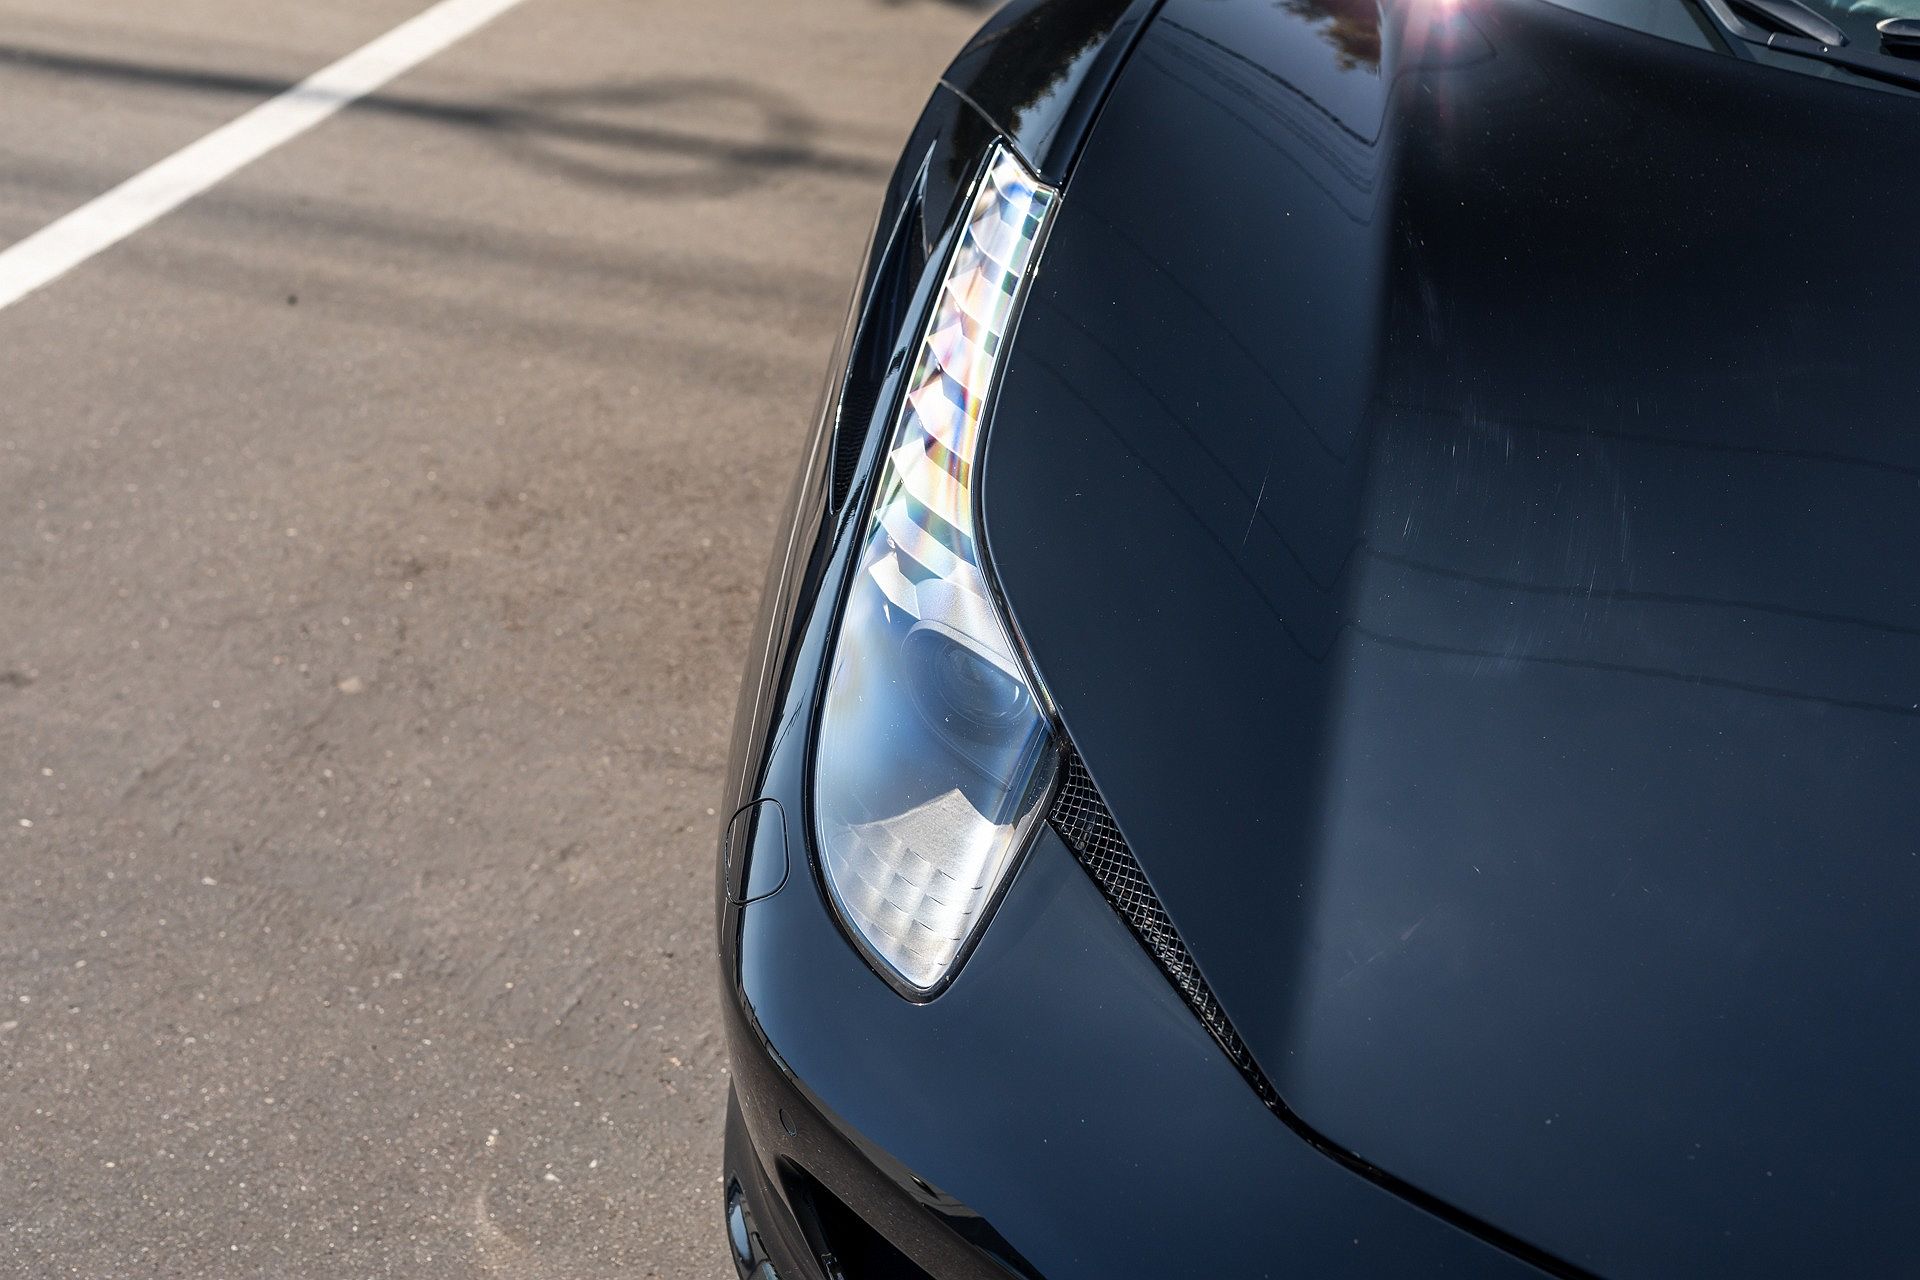 2014 Ferrari 458 null image 13